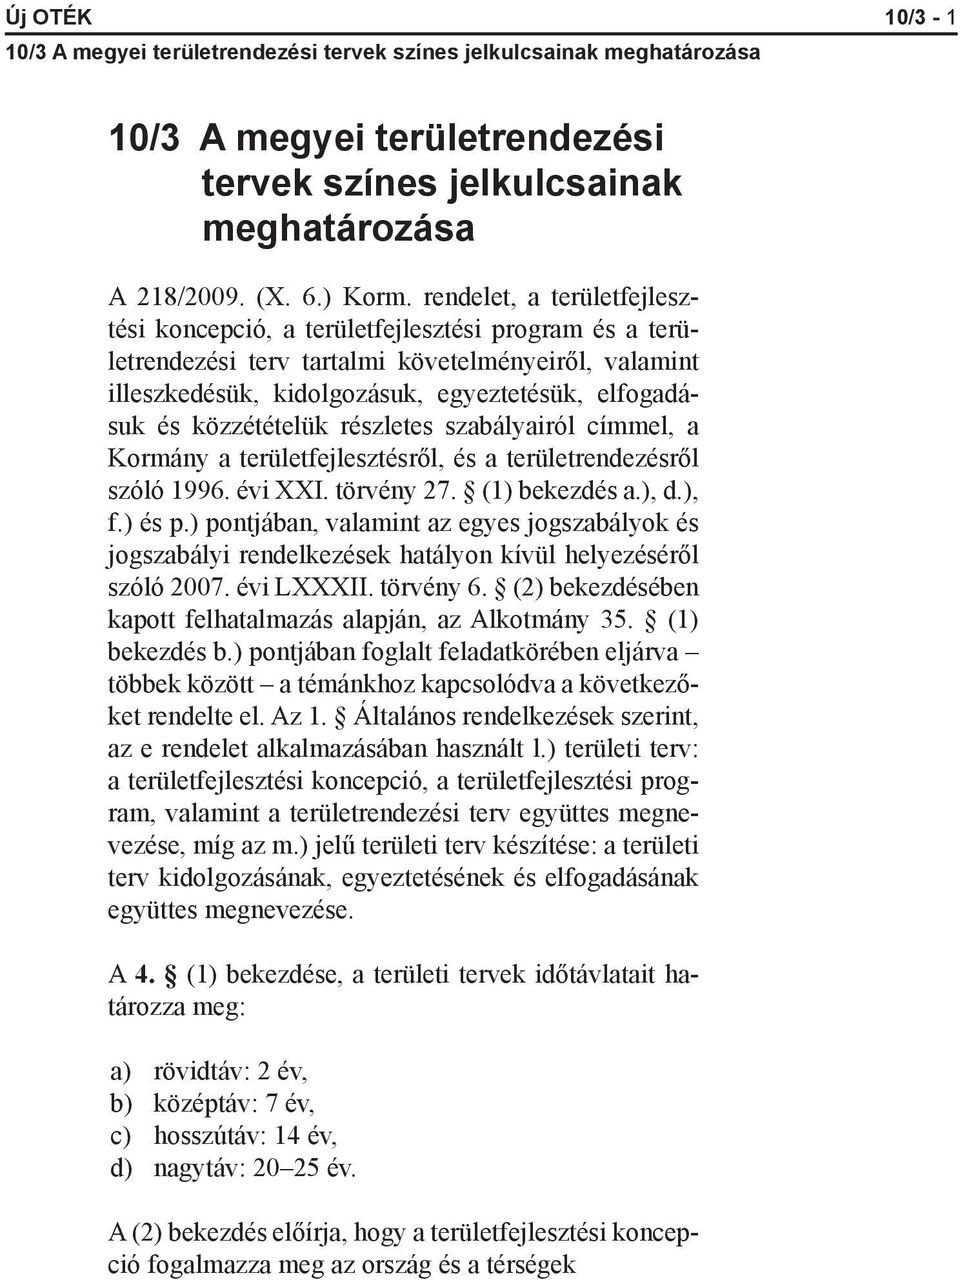 közzétételük részletes szabályairól címmel, a Kormány a területfejlesztésről, és a területrendezésről szóló 1996. évi XXI. törvény 27. (1) bekezdés a.), d.), f.) és p.